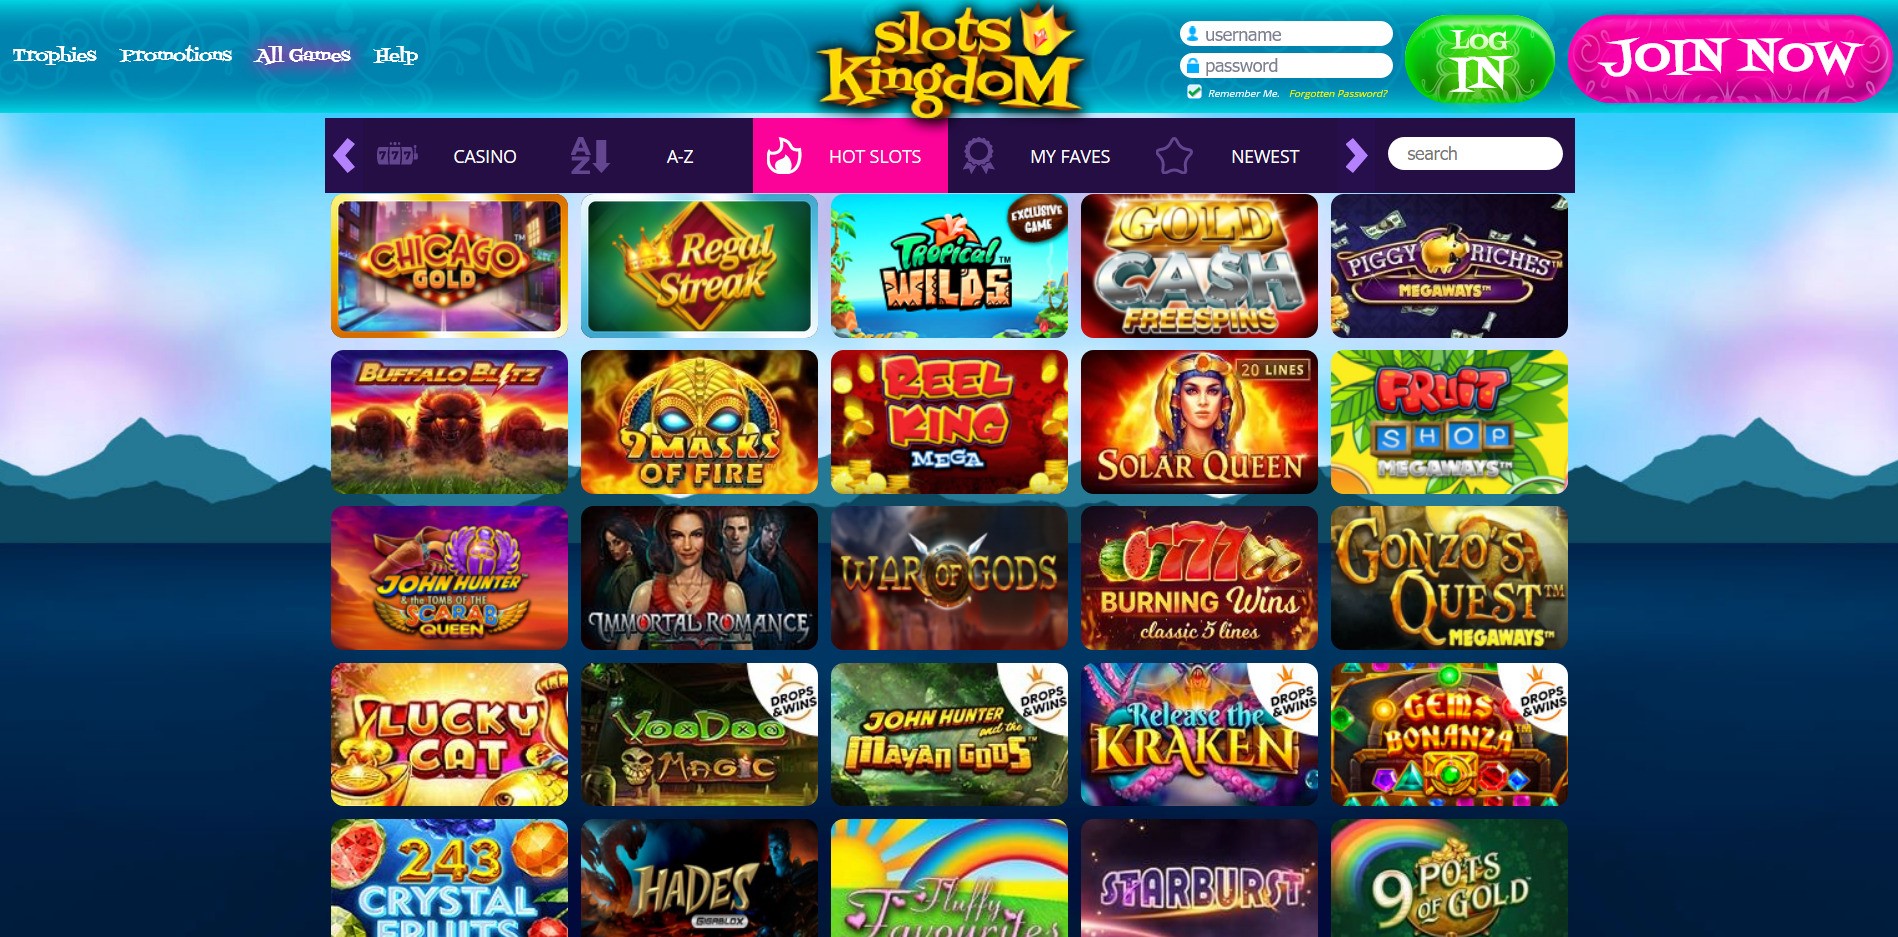 Slots Kingdom Casino Games